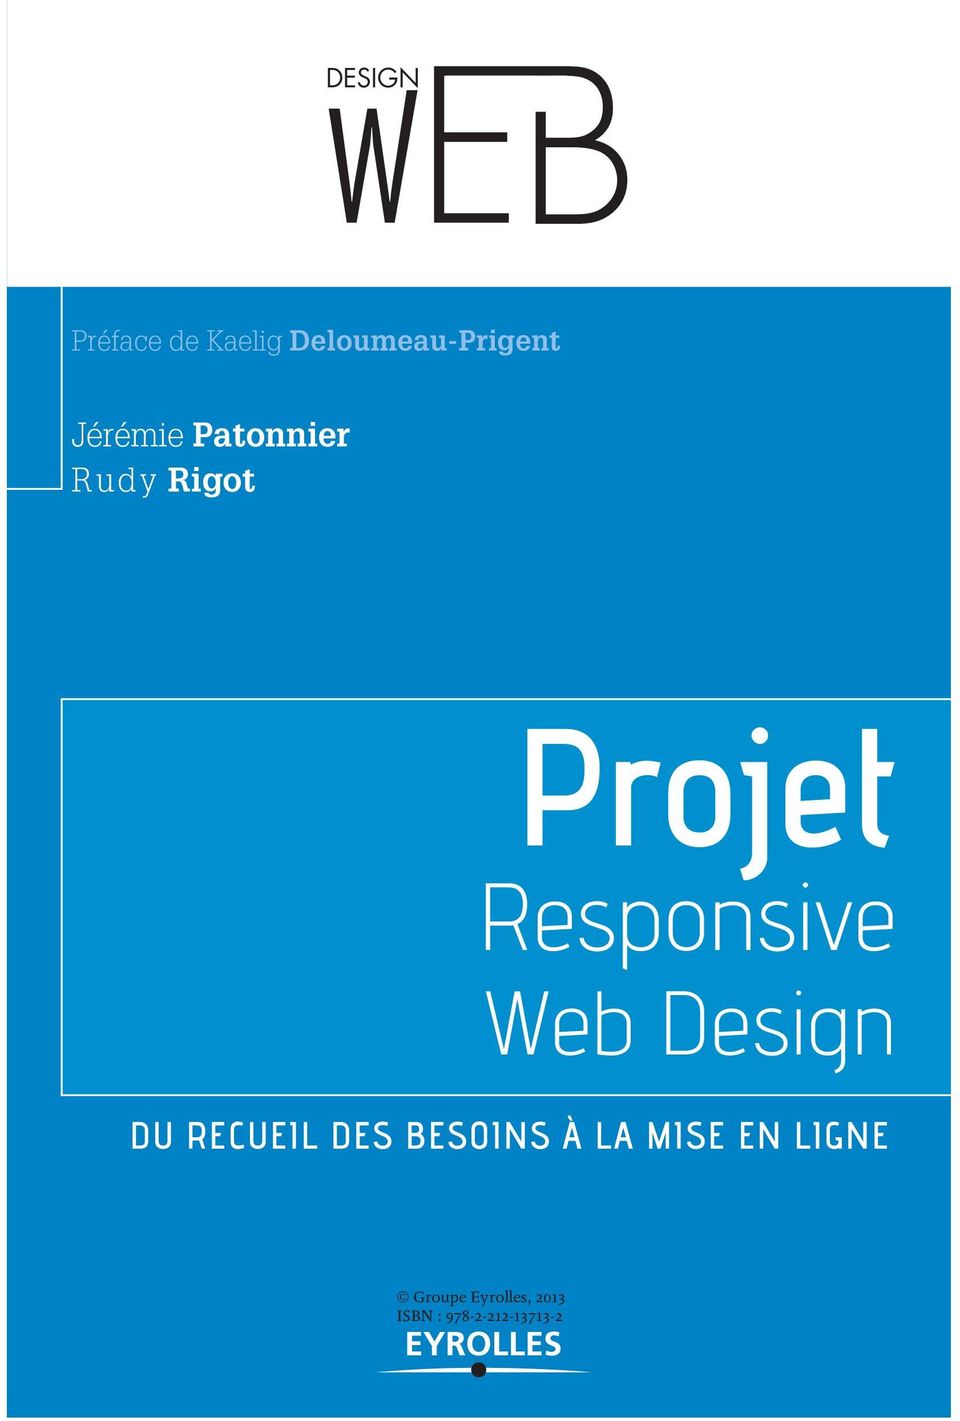 Web Design DU RECUEIL DES BESOINS À LA MISE EN